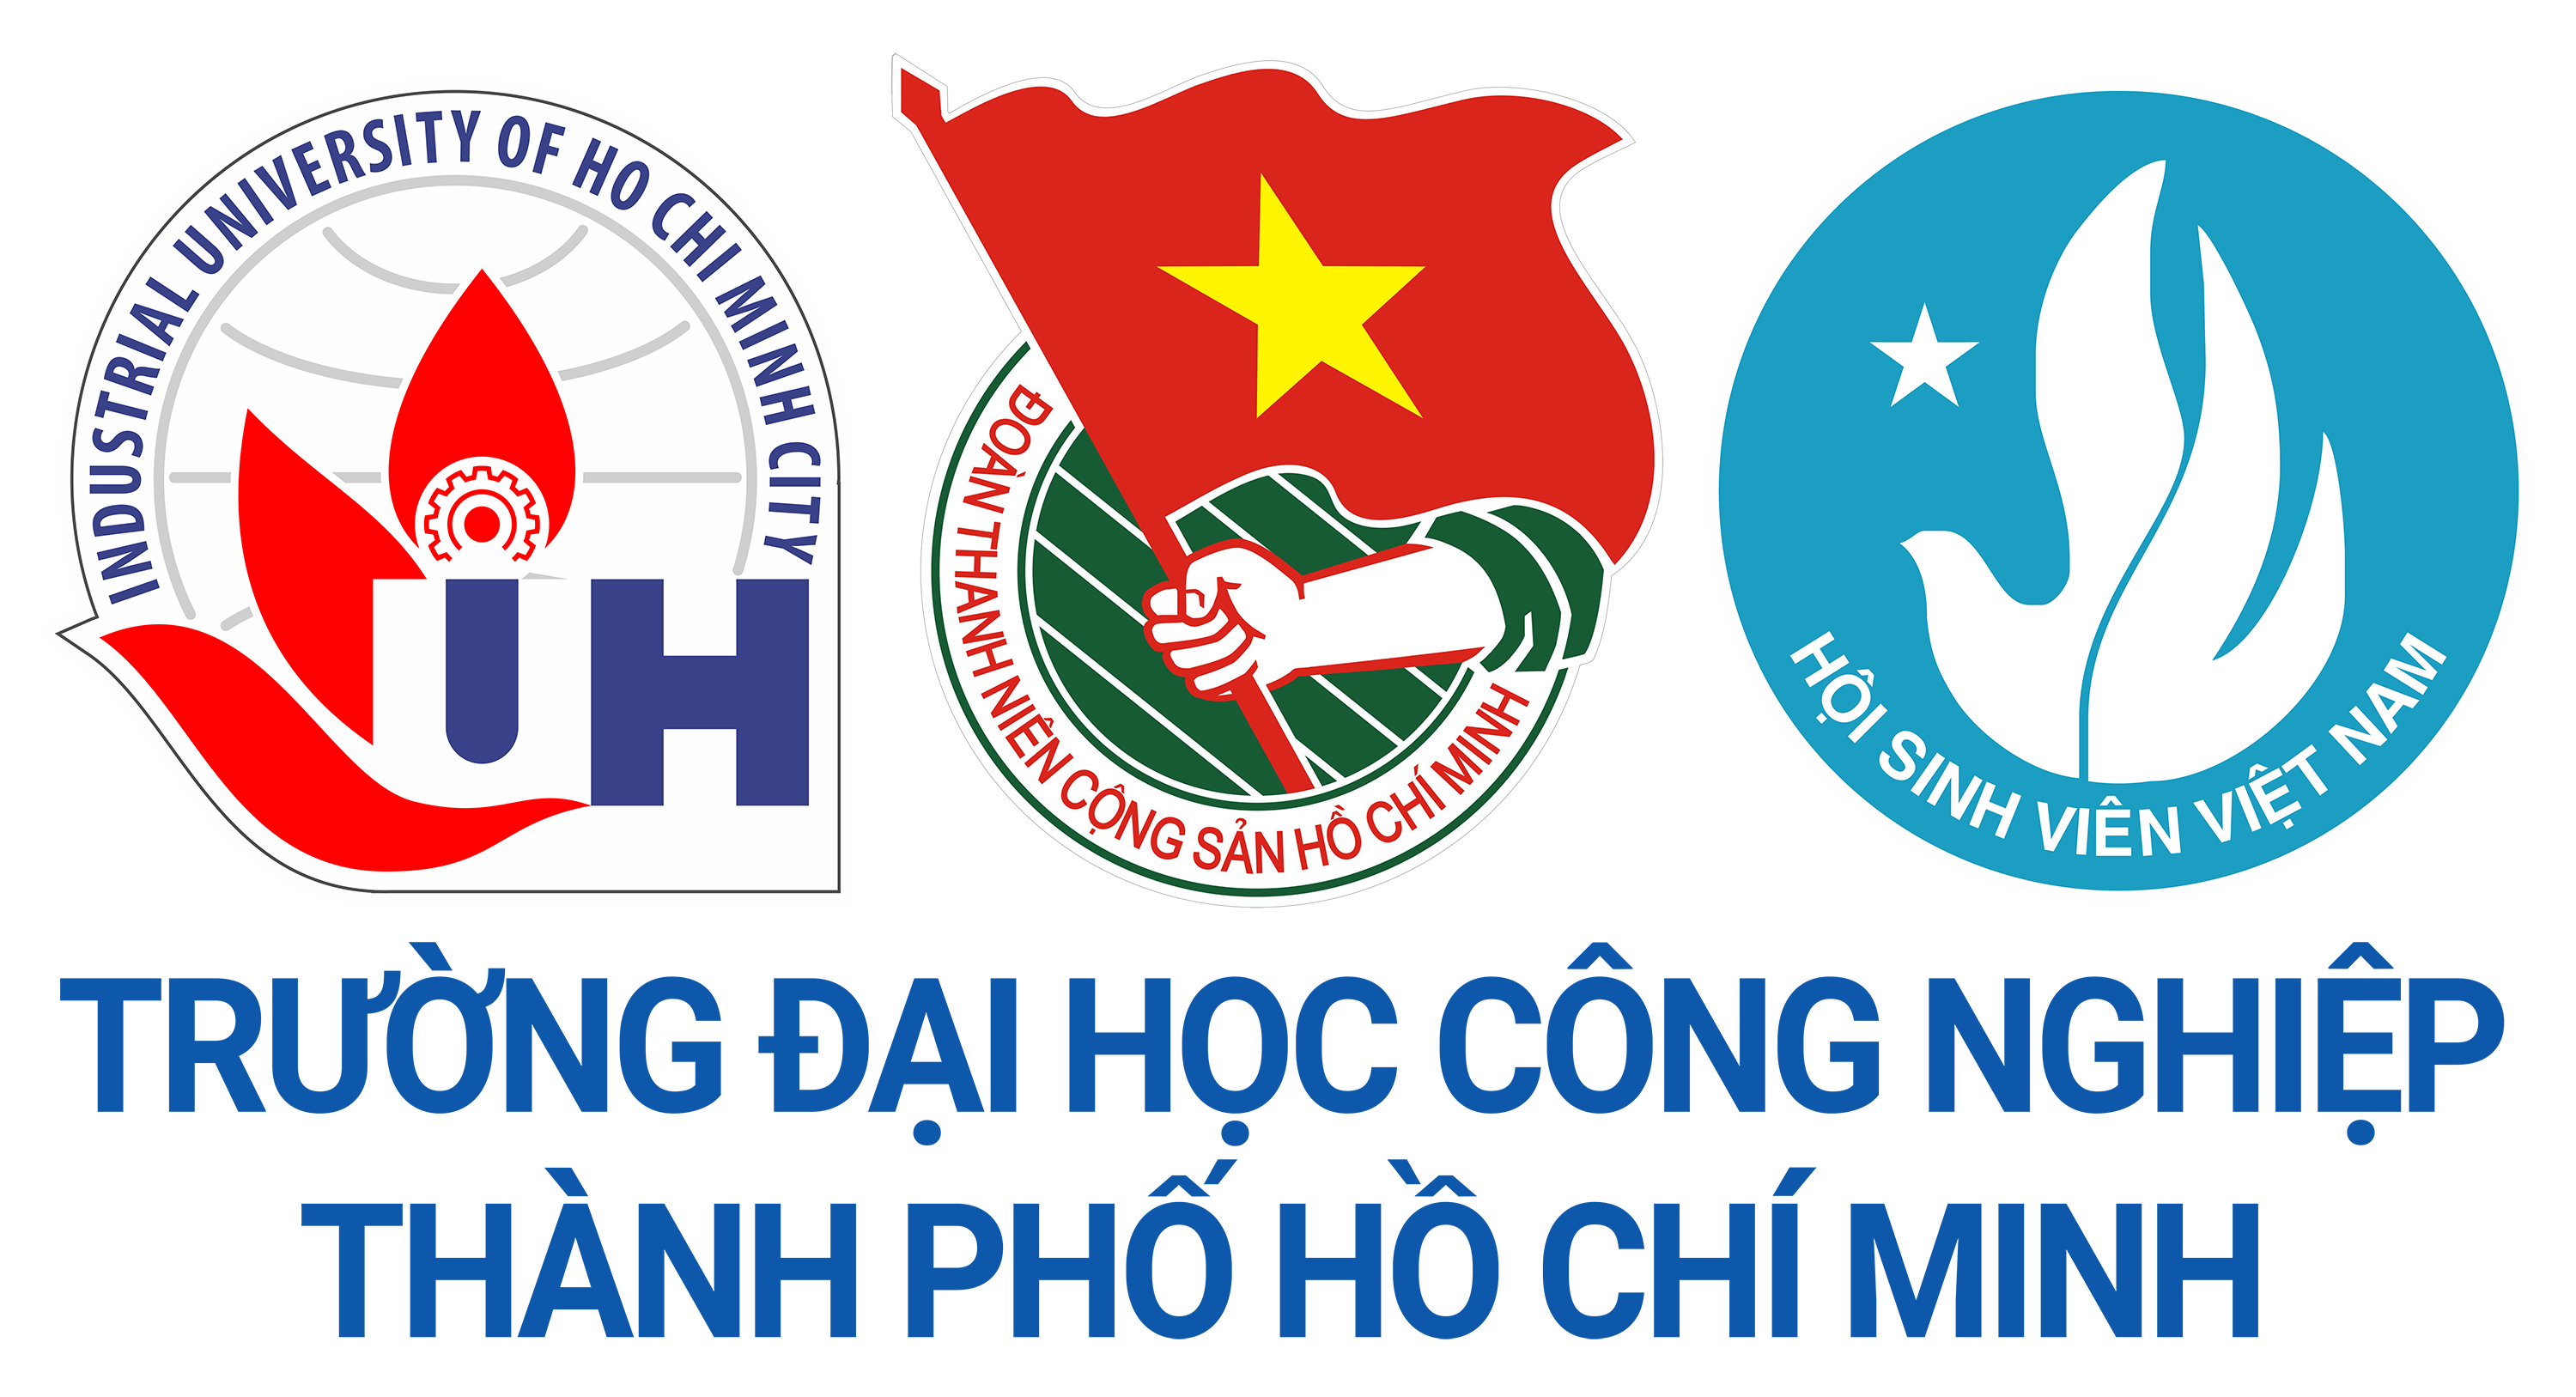 Đoàn Trường Đại học Công nghiệp Thành phố Hồ Chí Minh